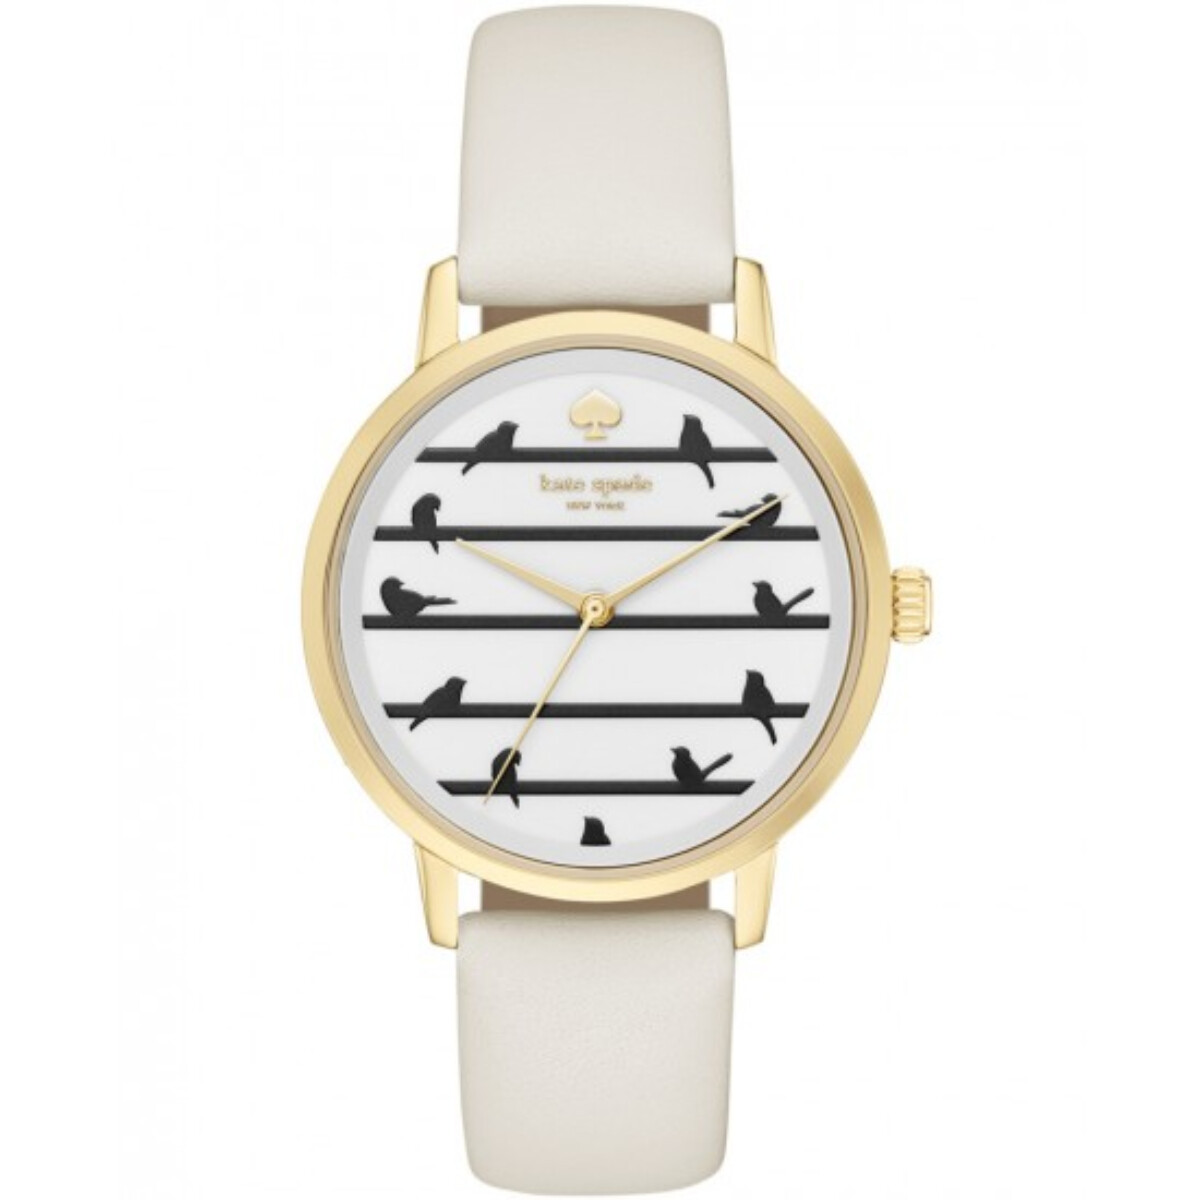 Reloj Kate Spade Fashion Cuero Blanco 